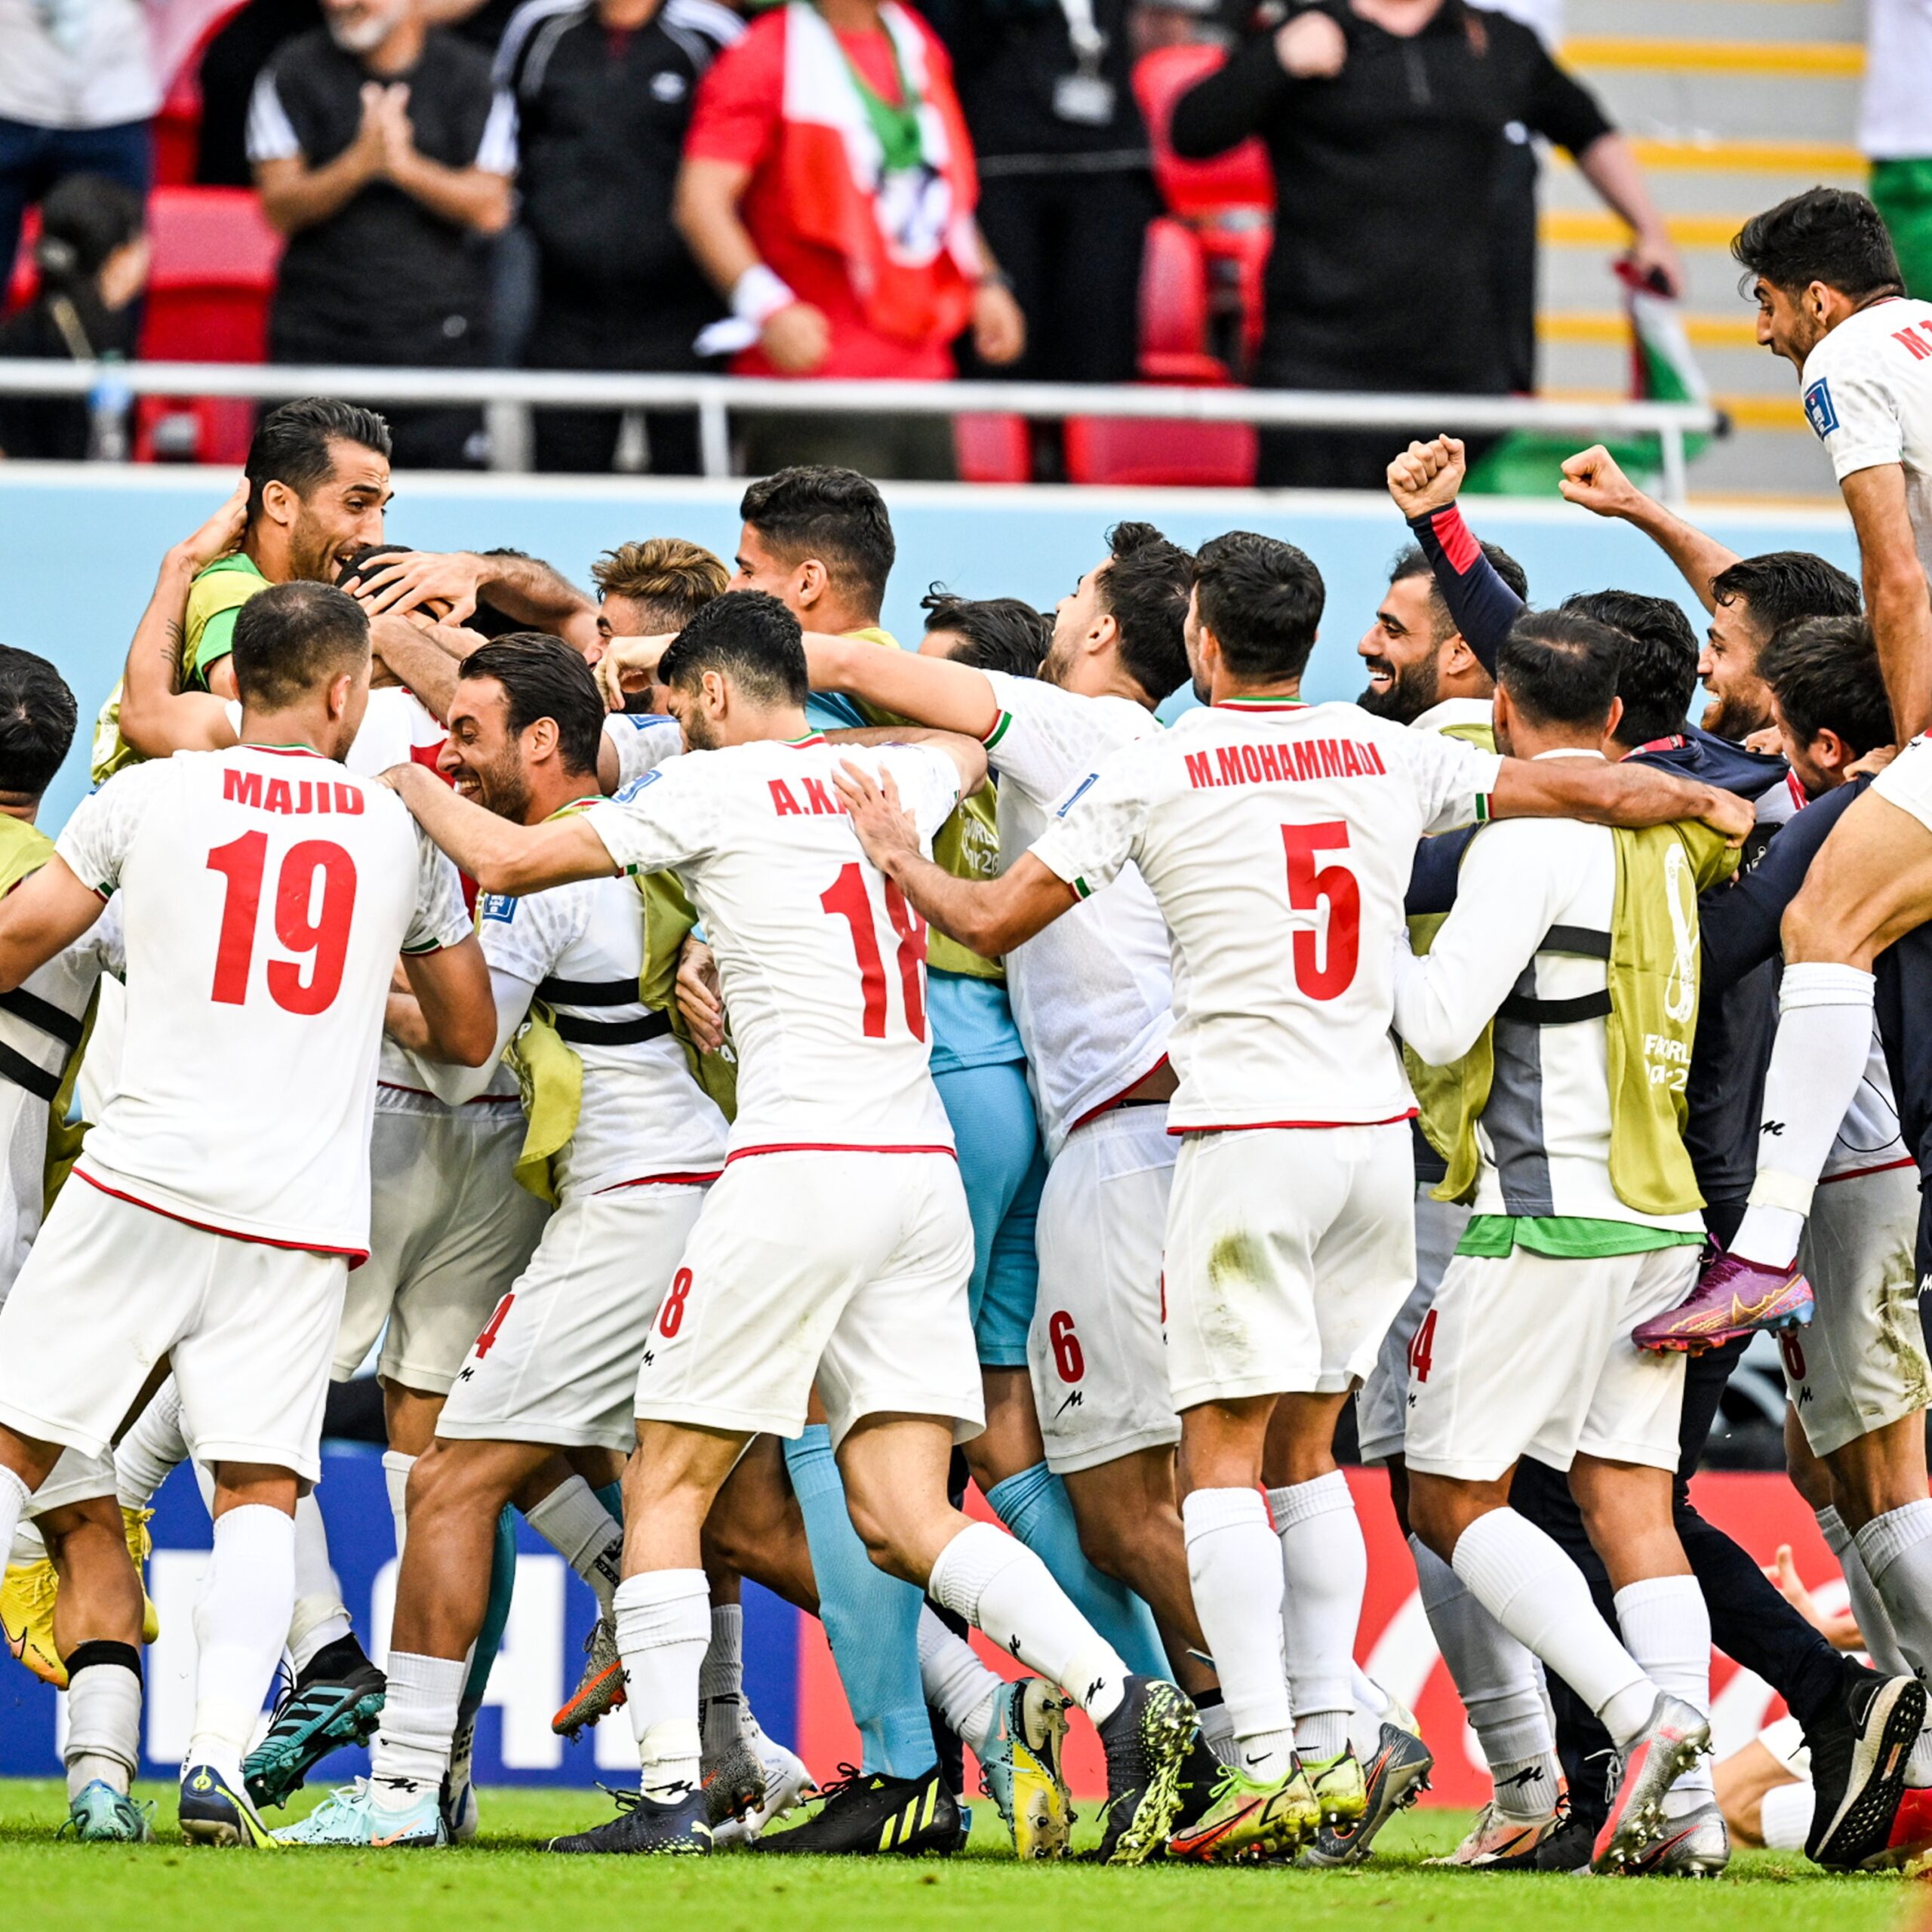 Wales 0 - 2 Iran